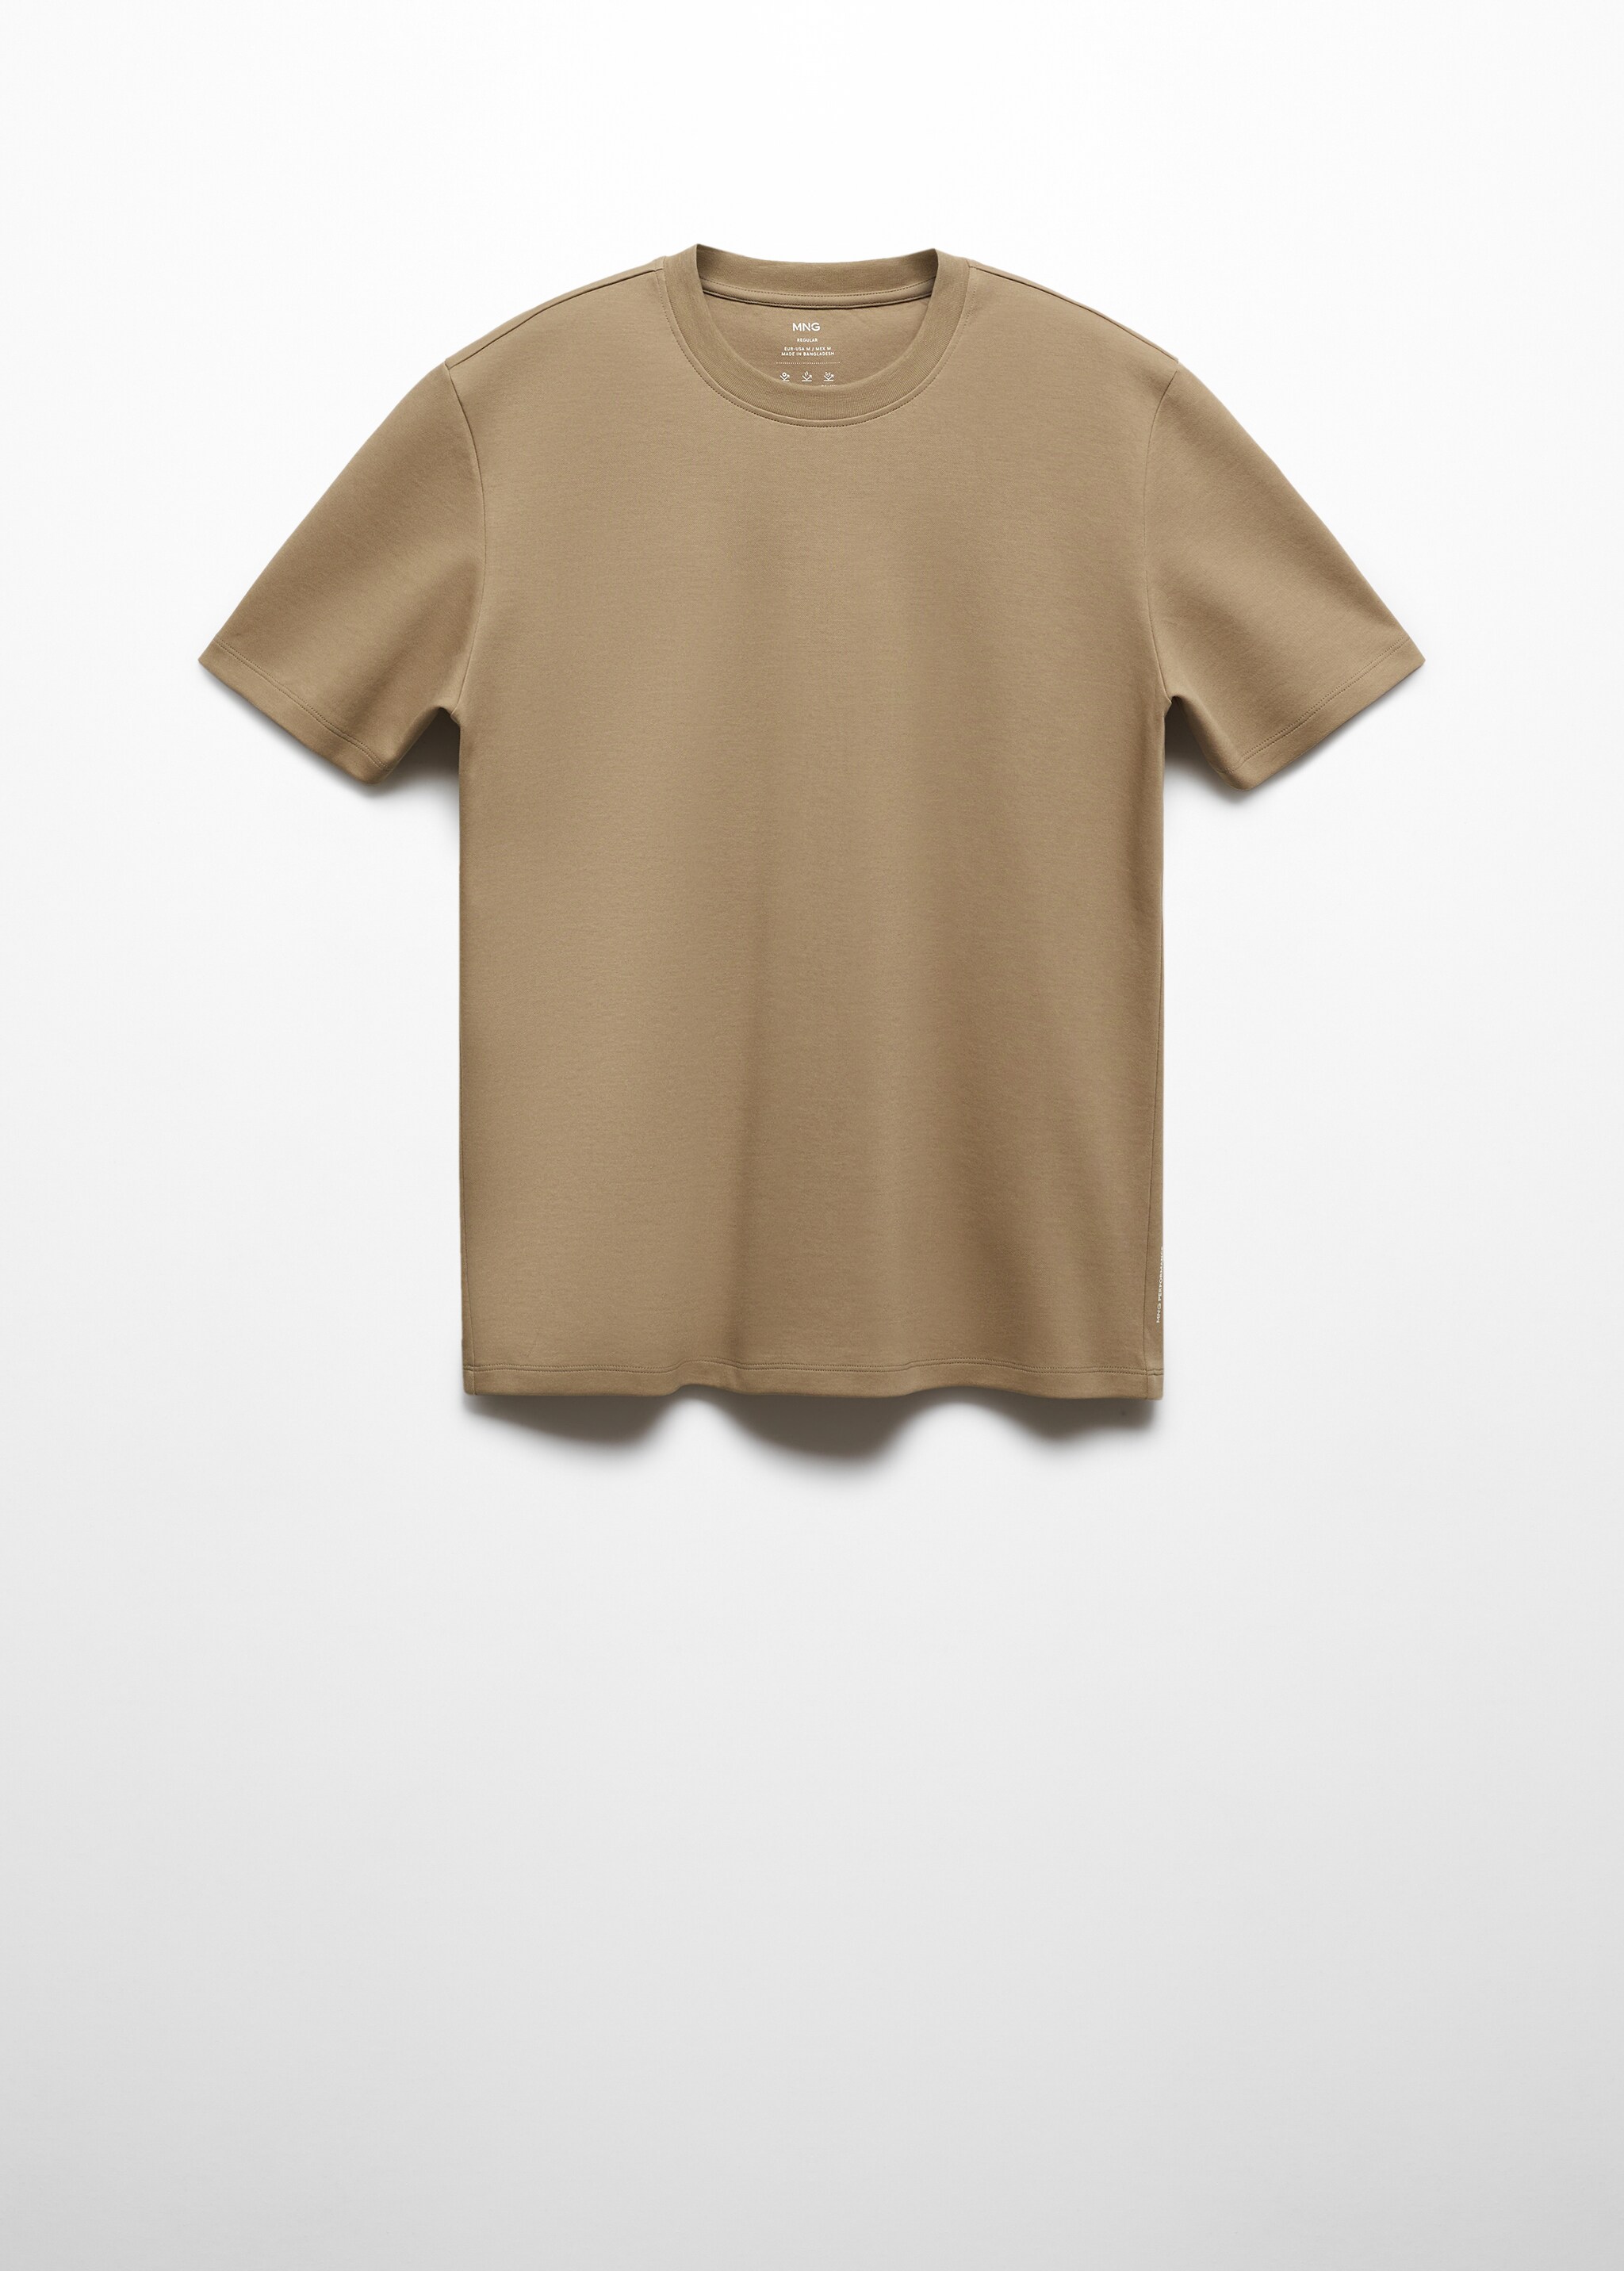 Camiseta algodón transpirable - Artículo sin modelo